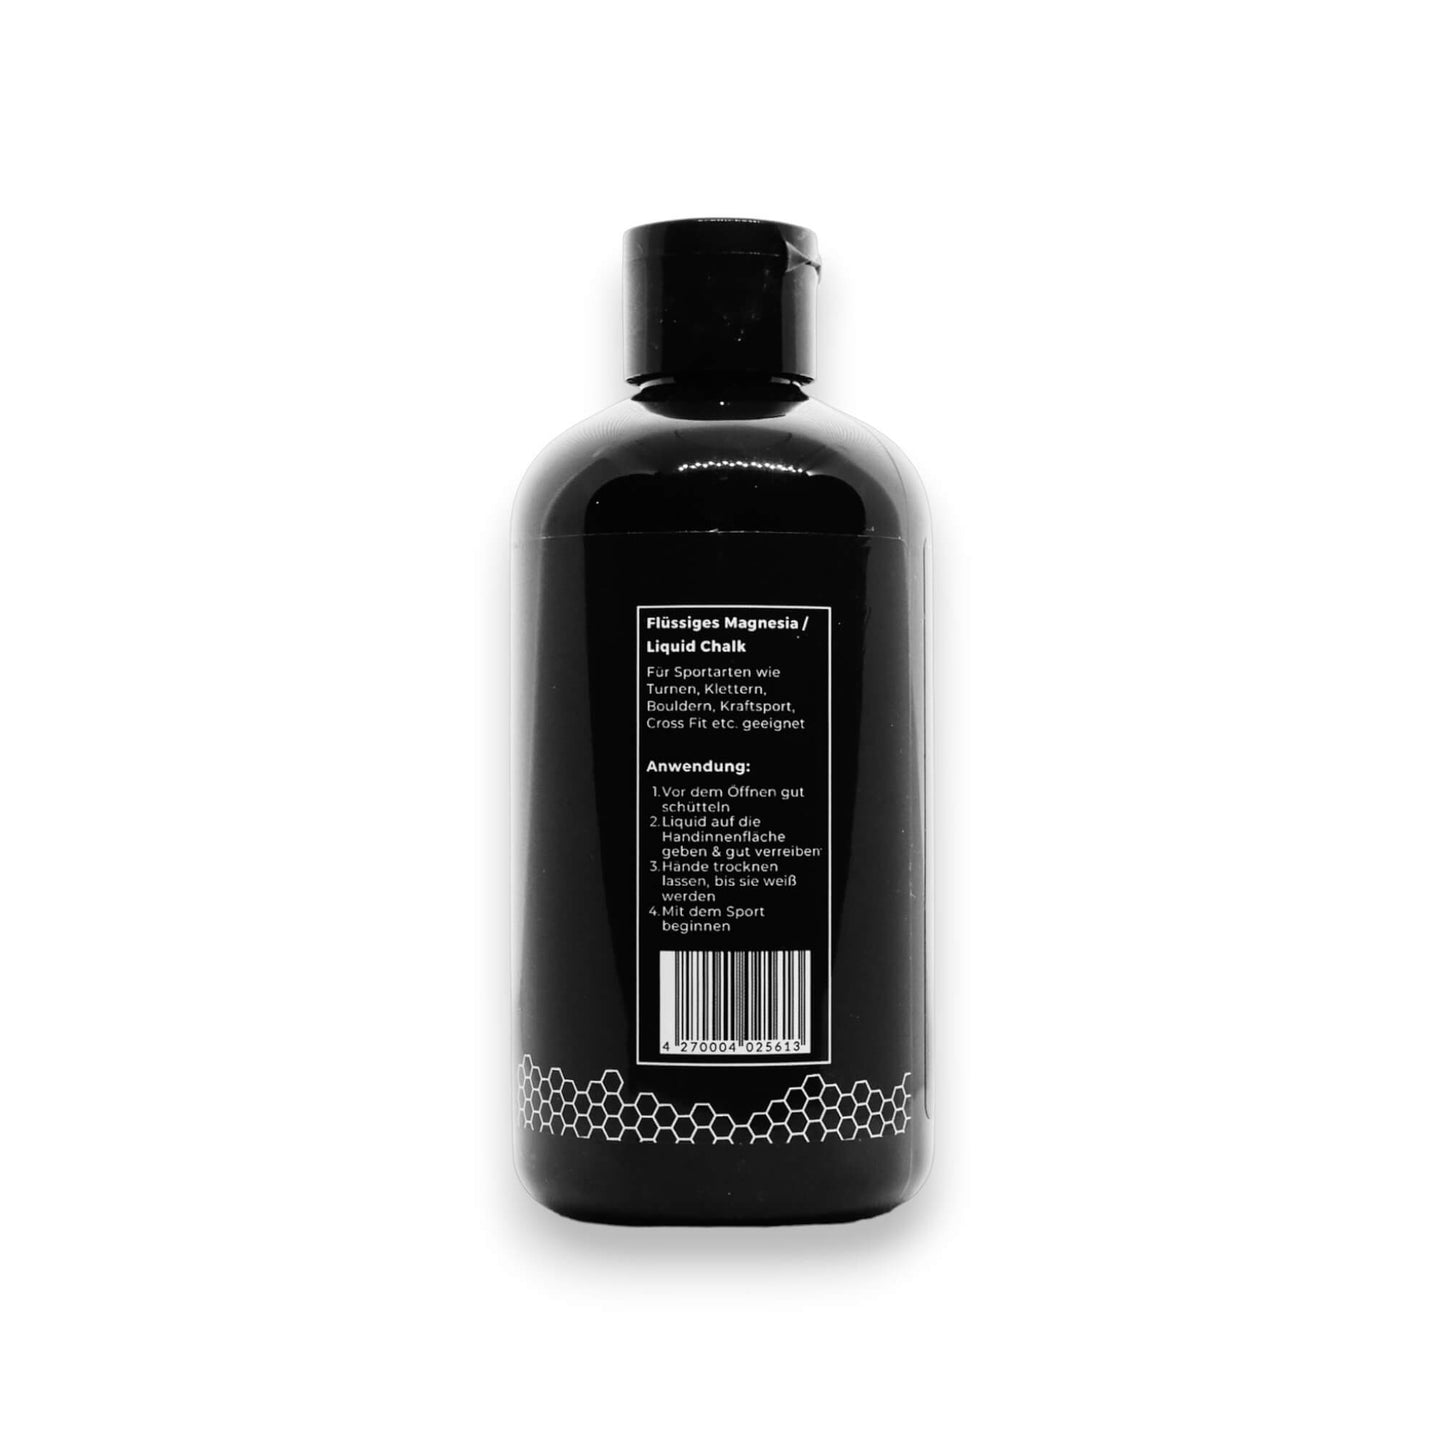 Liquid Chalk 250 ml: Revolutioniert deinen Griff. Verbessert deine Leistung.